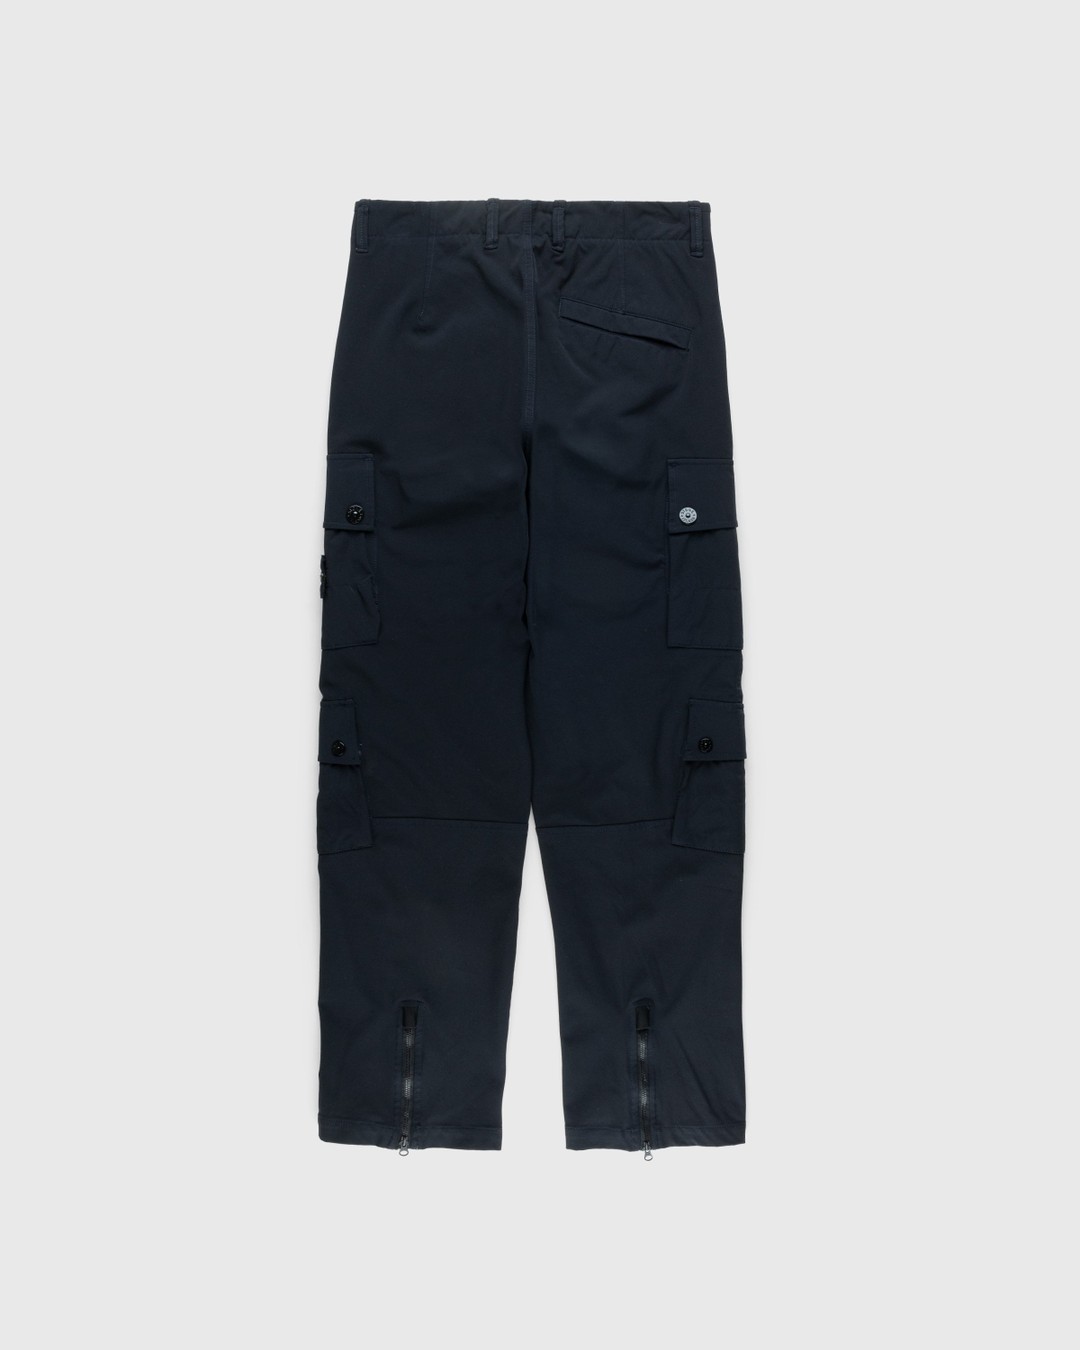 Stone Island – Nylon Cargo Pants Navy Blue - Cargo Pants - Blue - Image 2